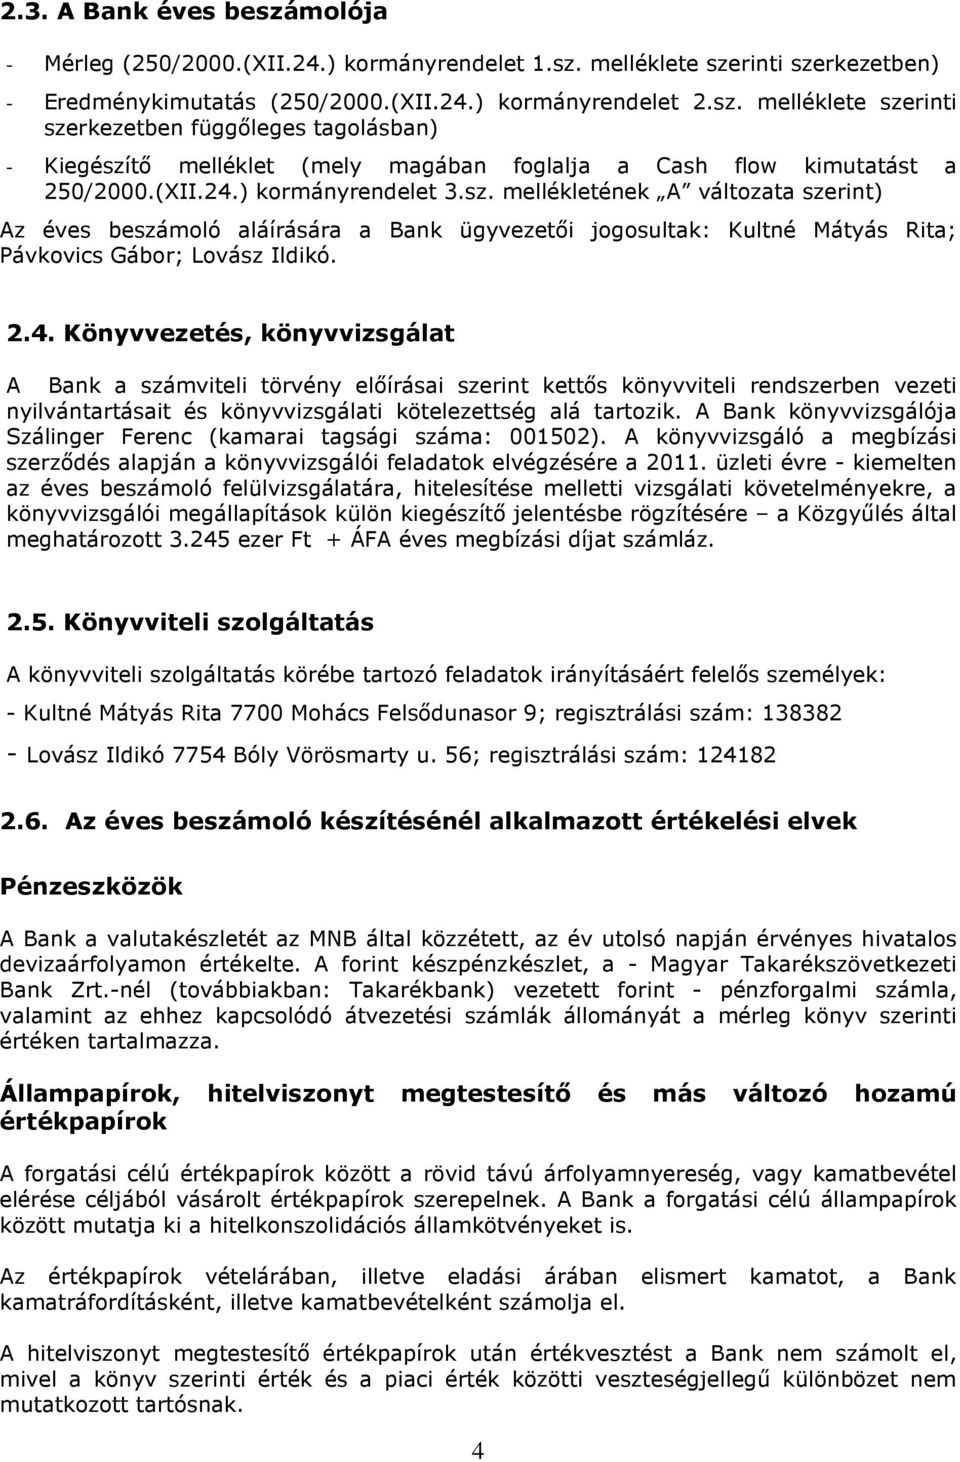 A Bank könyvvizsgálója Szálinger Ferenc (kamarai tagsági száma: 001502). A könyvvizsgáló a megbízási szerződés alapján a könyvvizsgálói feladatok elvégzésére a 2011.